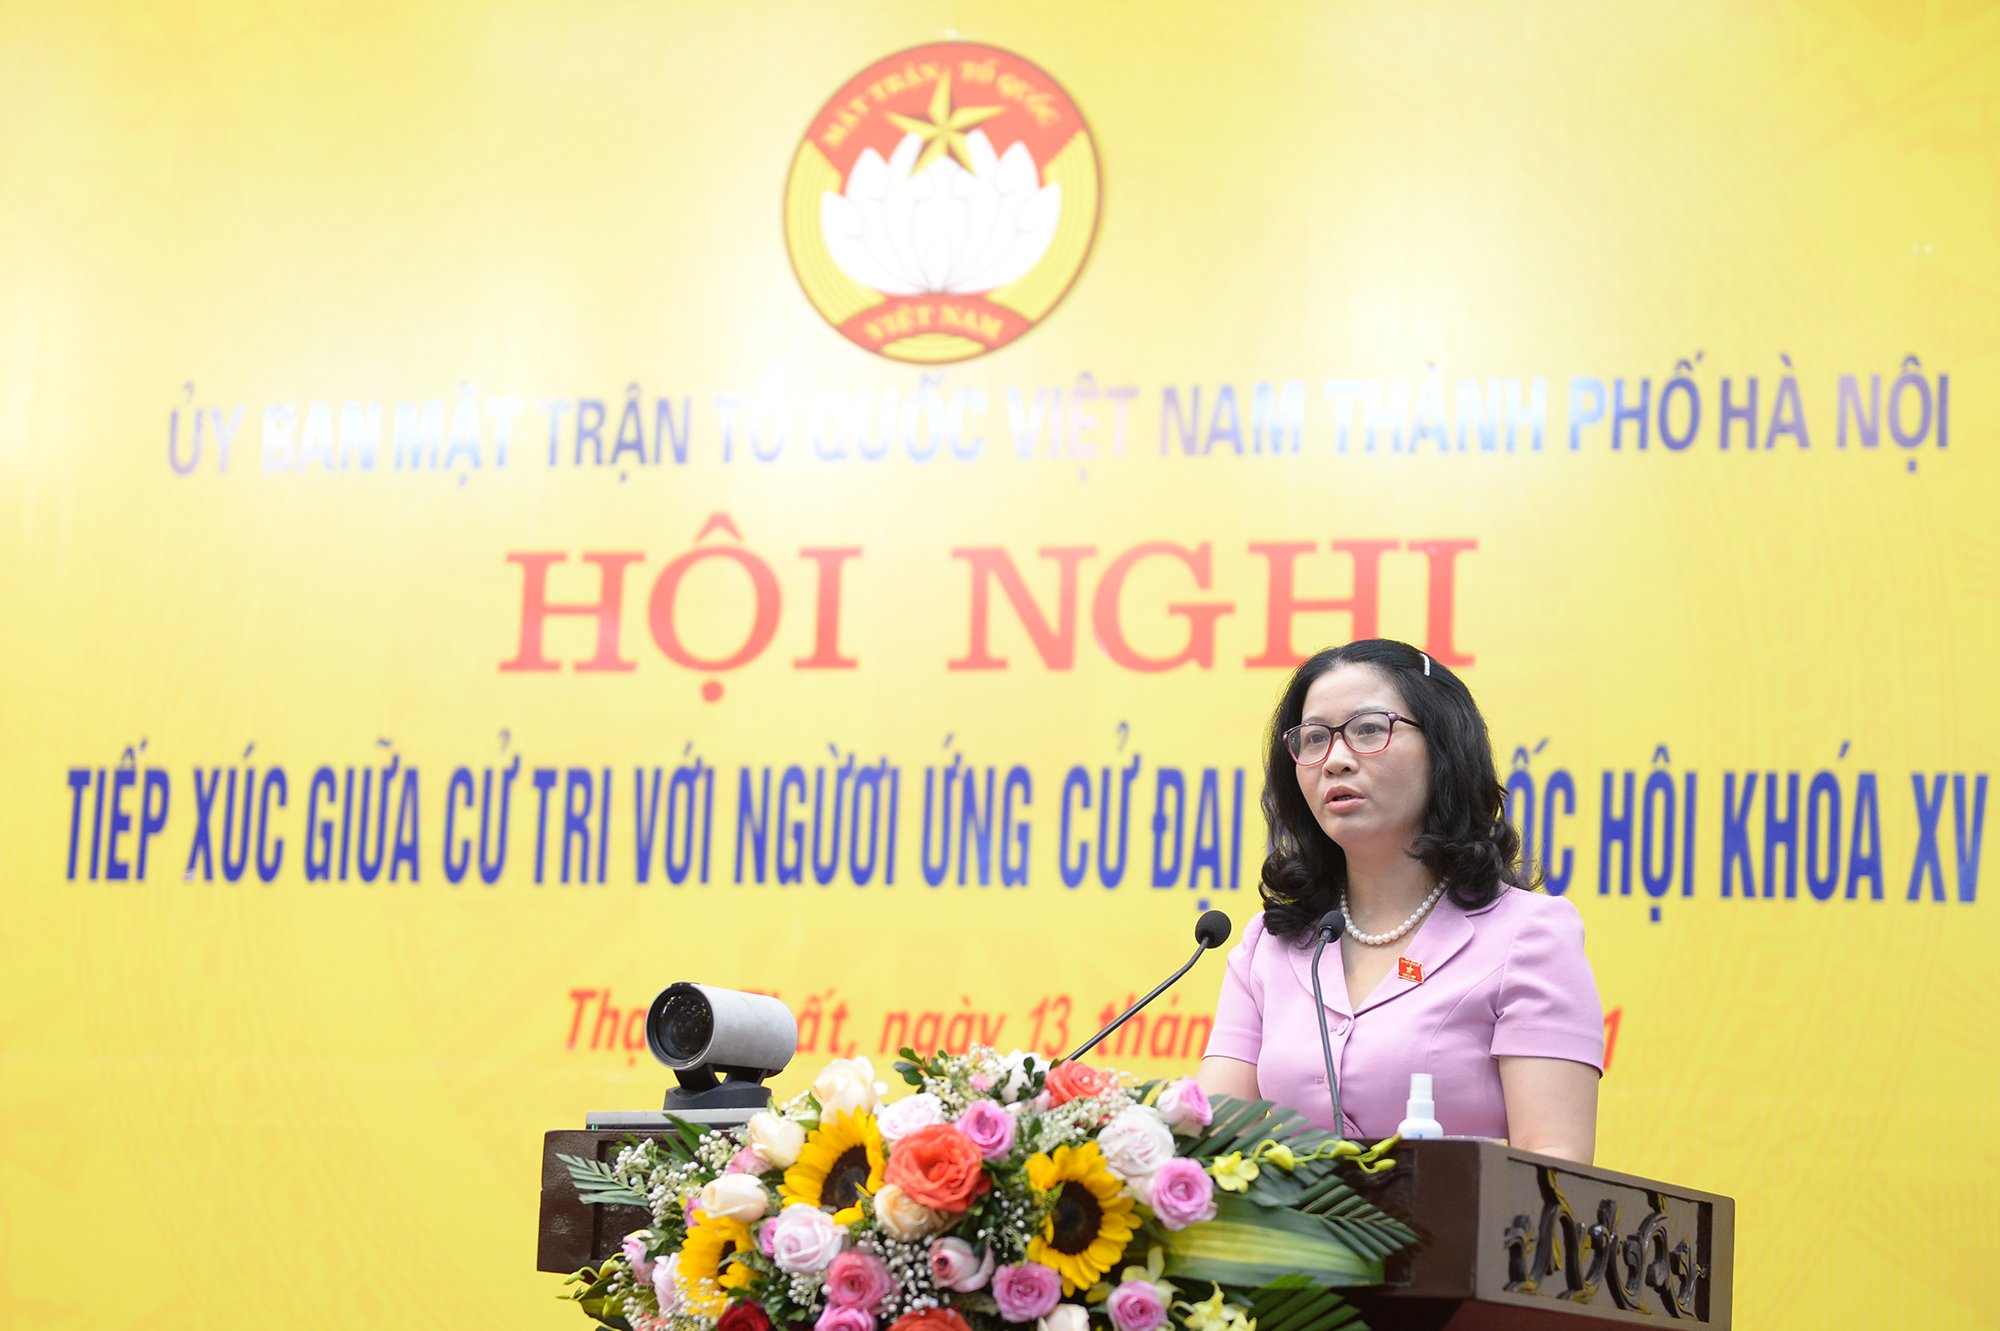 Giám đốc Học viện Nông nghiệp Việt Nam muốn xây dựng cơ chế cho thanh niên khởi nghiệp nếu là ĐBQH khóa XV - Ảnh 2.